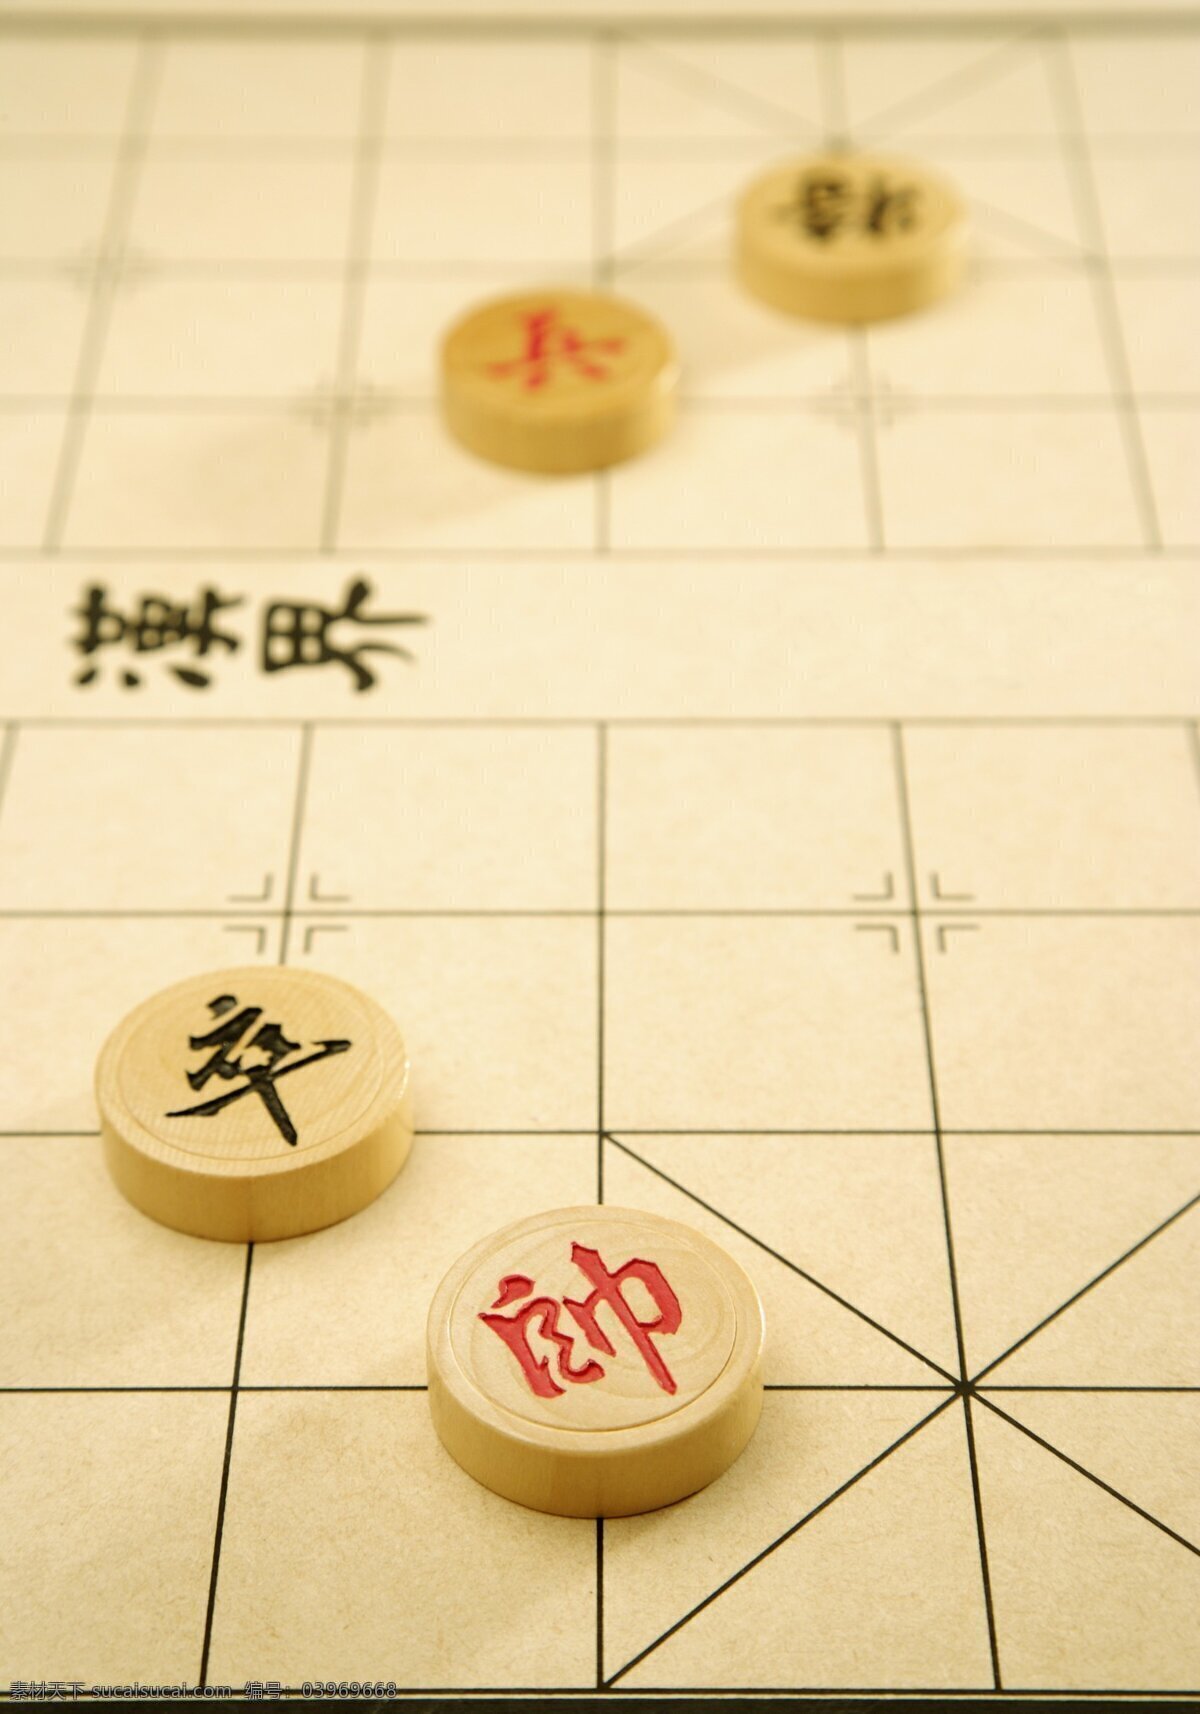 高清 中国象棋 棋盘 棋子 文化艺术